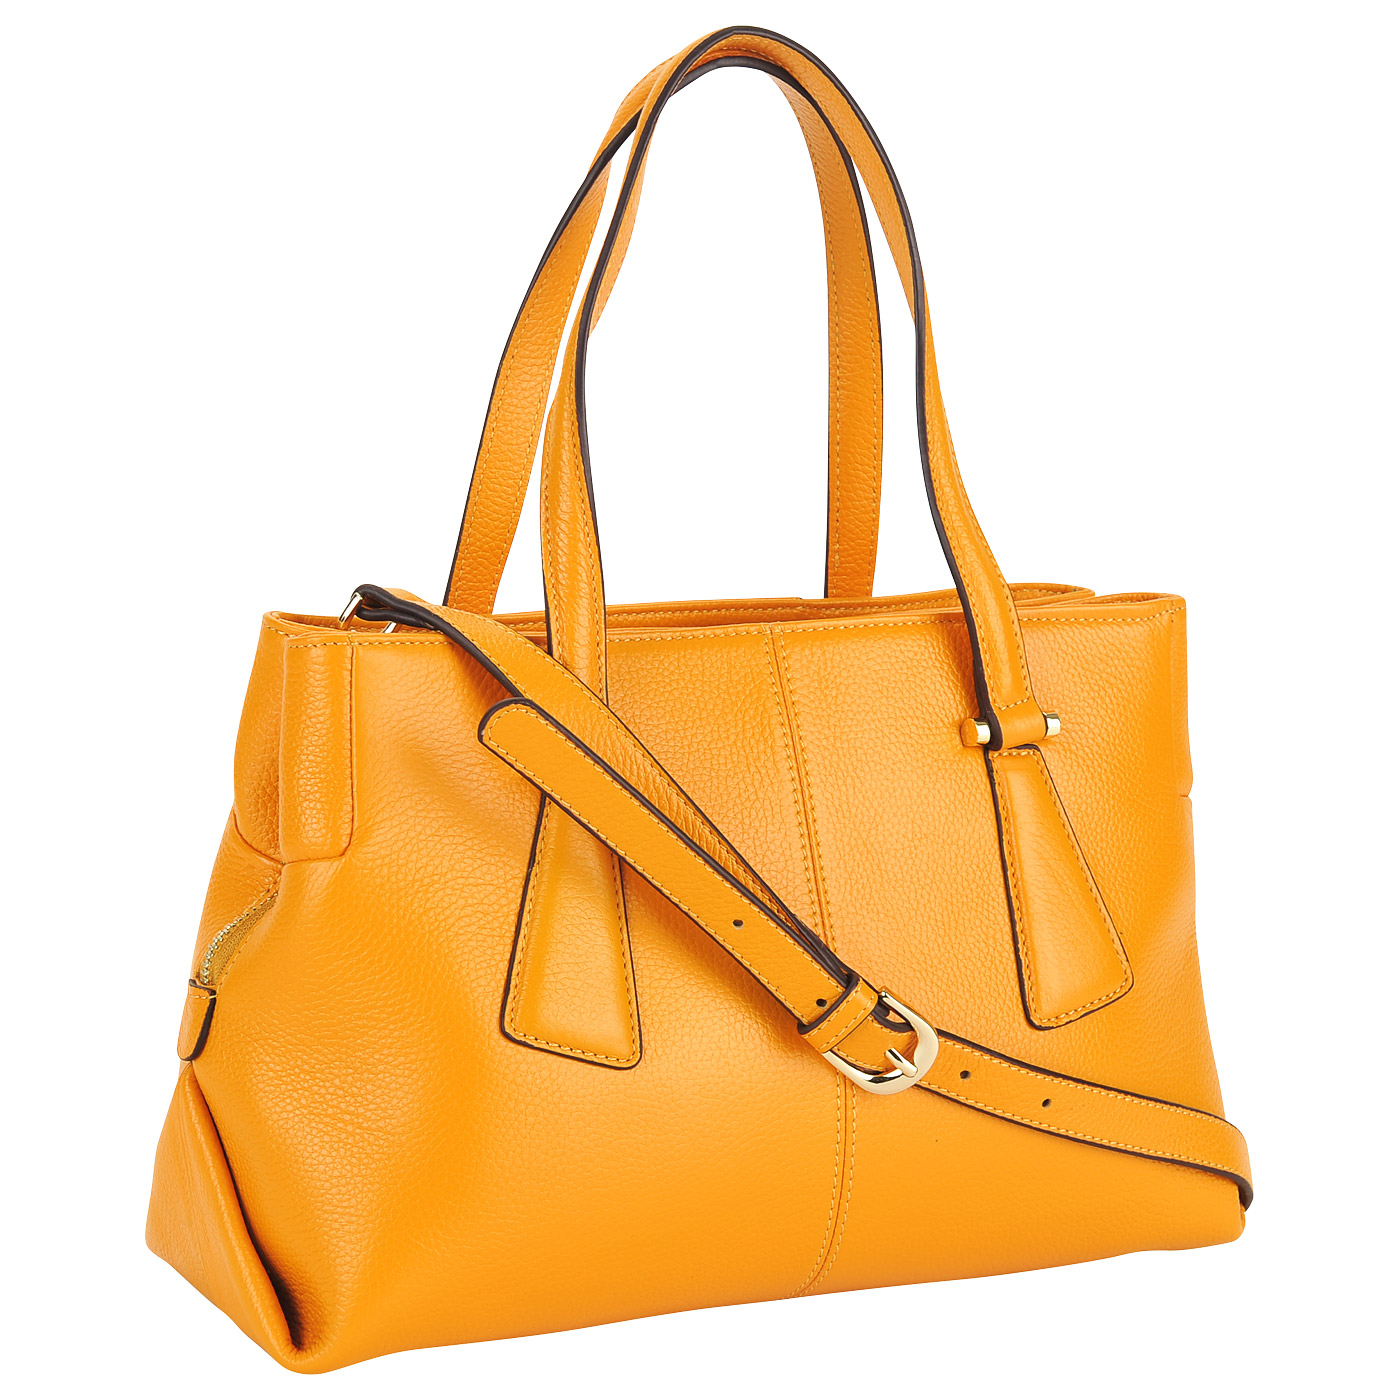 Женская кожаная сумка желтого цвета Fiato Dream 